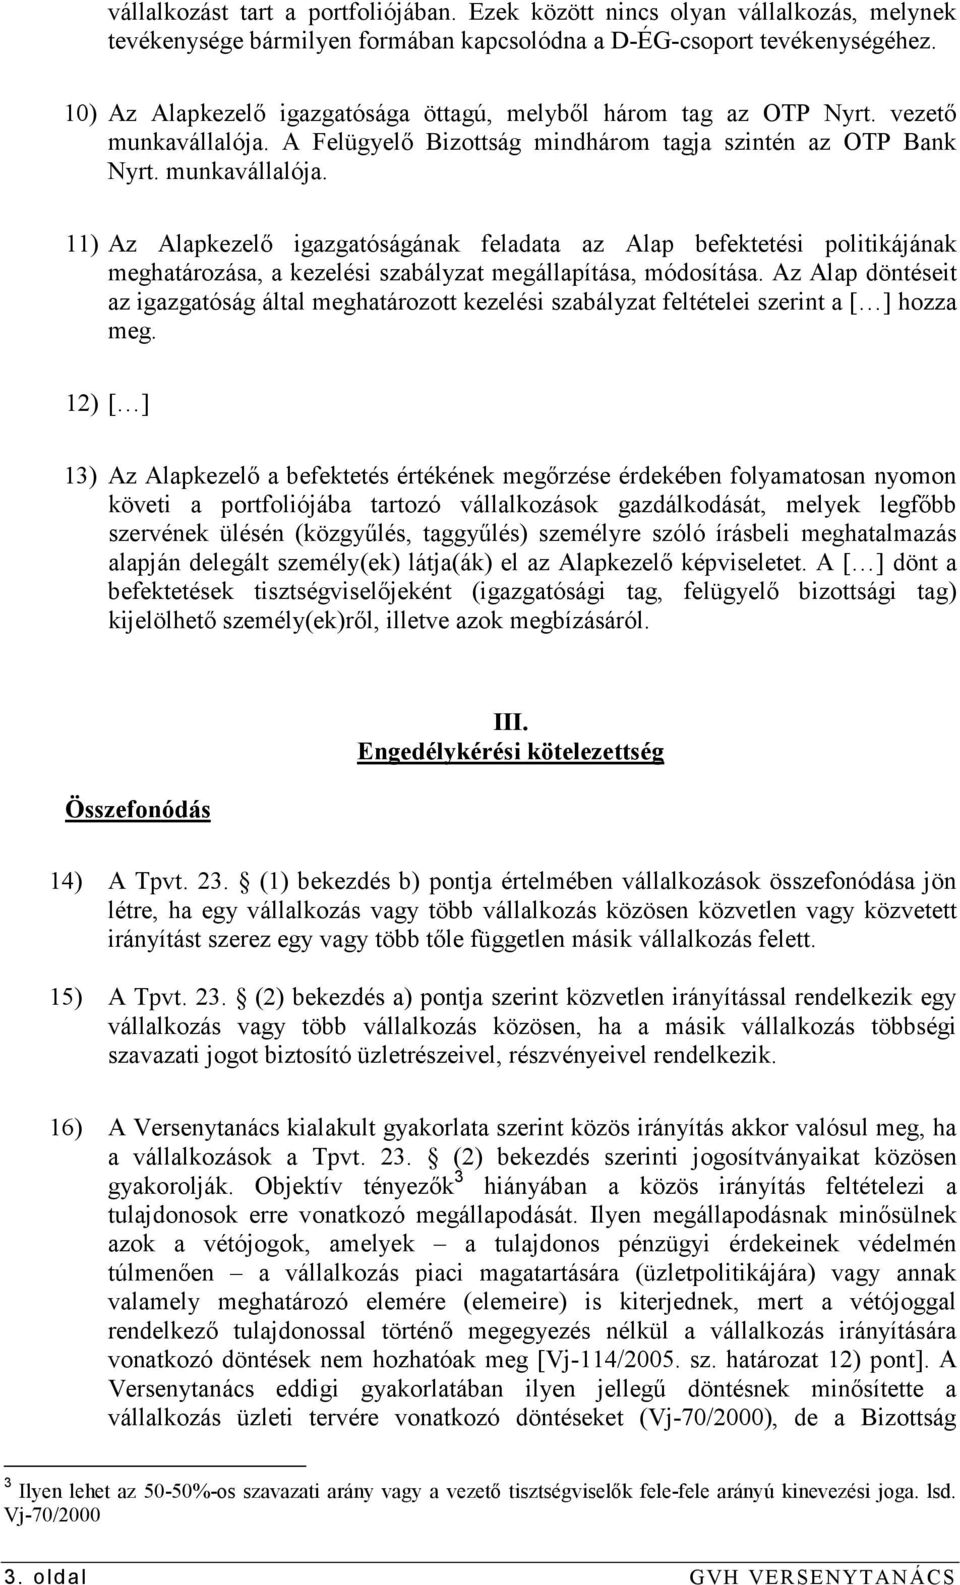 A Felügyelı Bizottság mindhárom tagja szintén az OTP Bank Nyrt. munkavállalója.